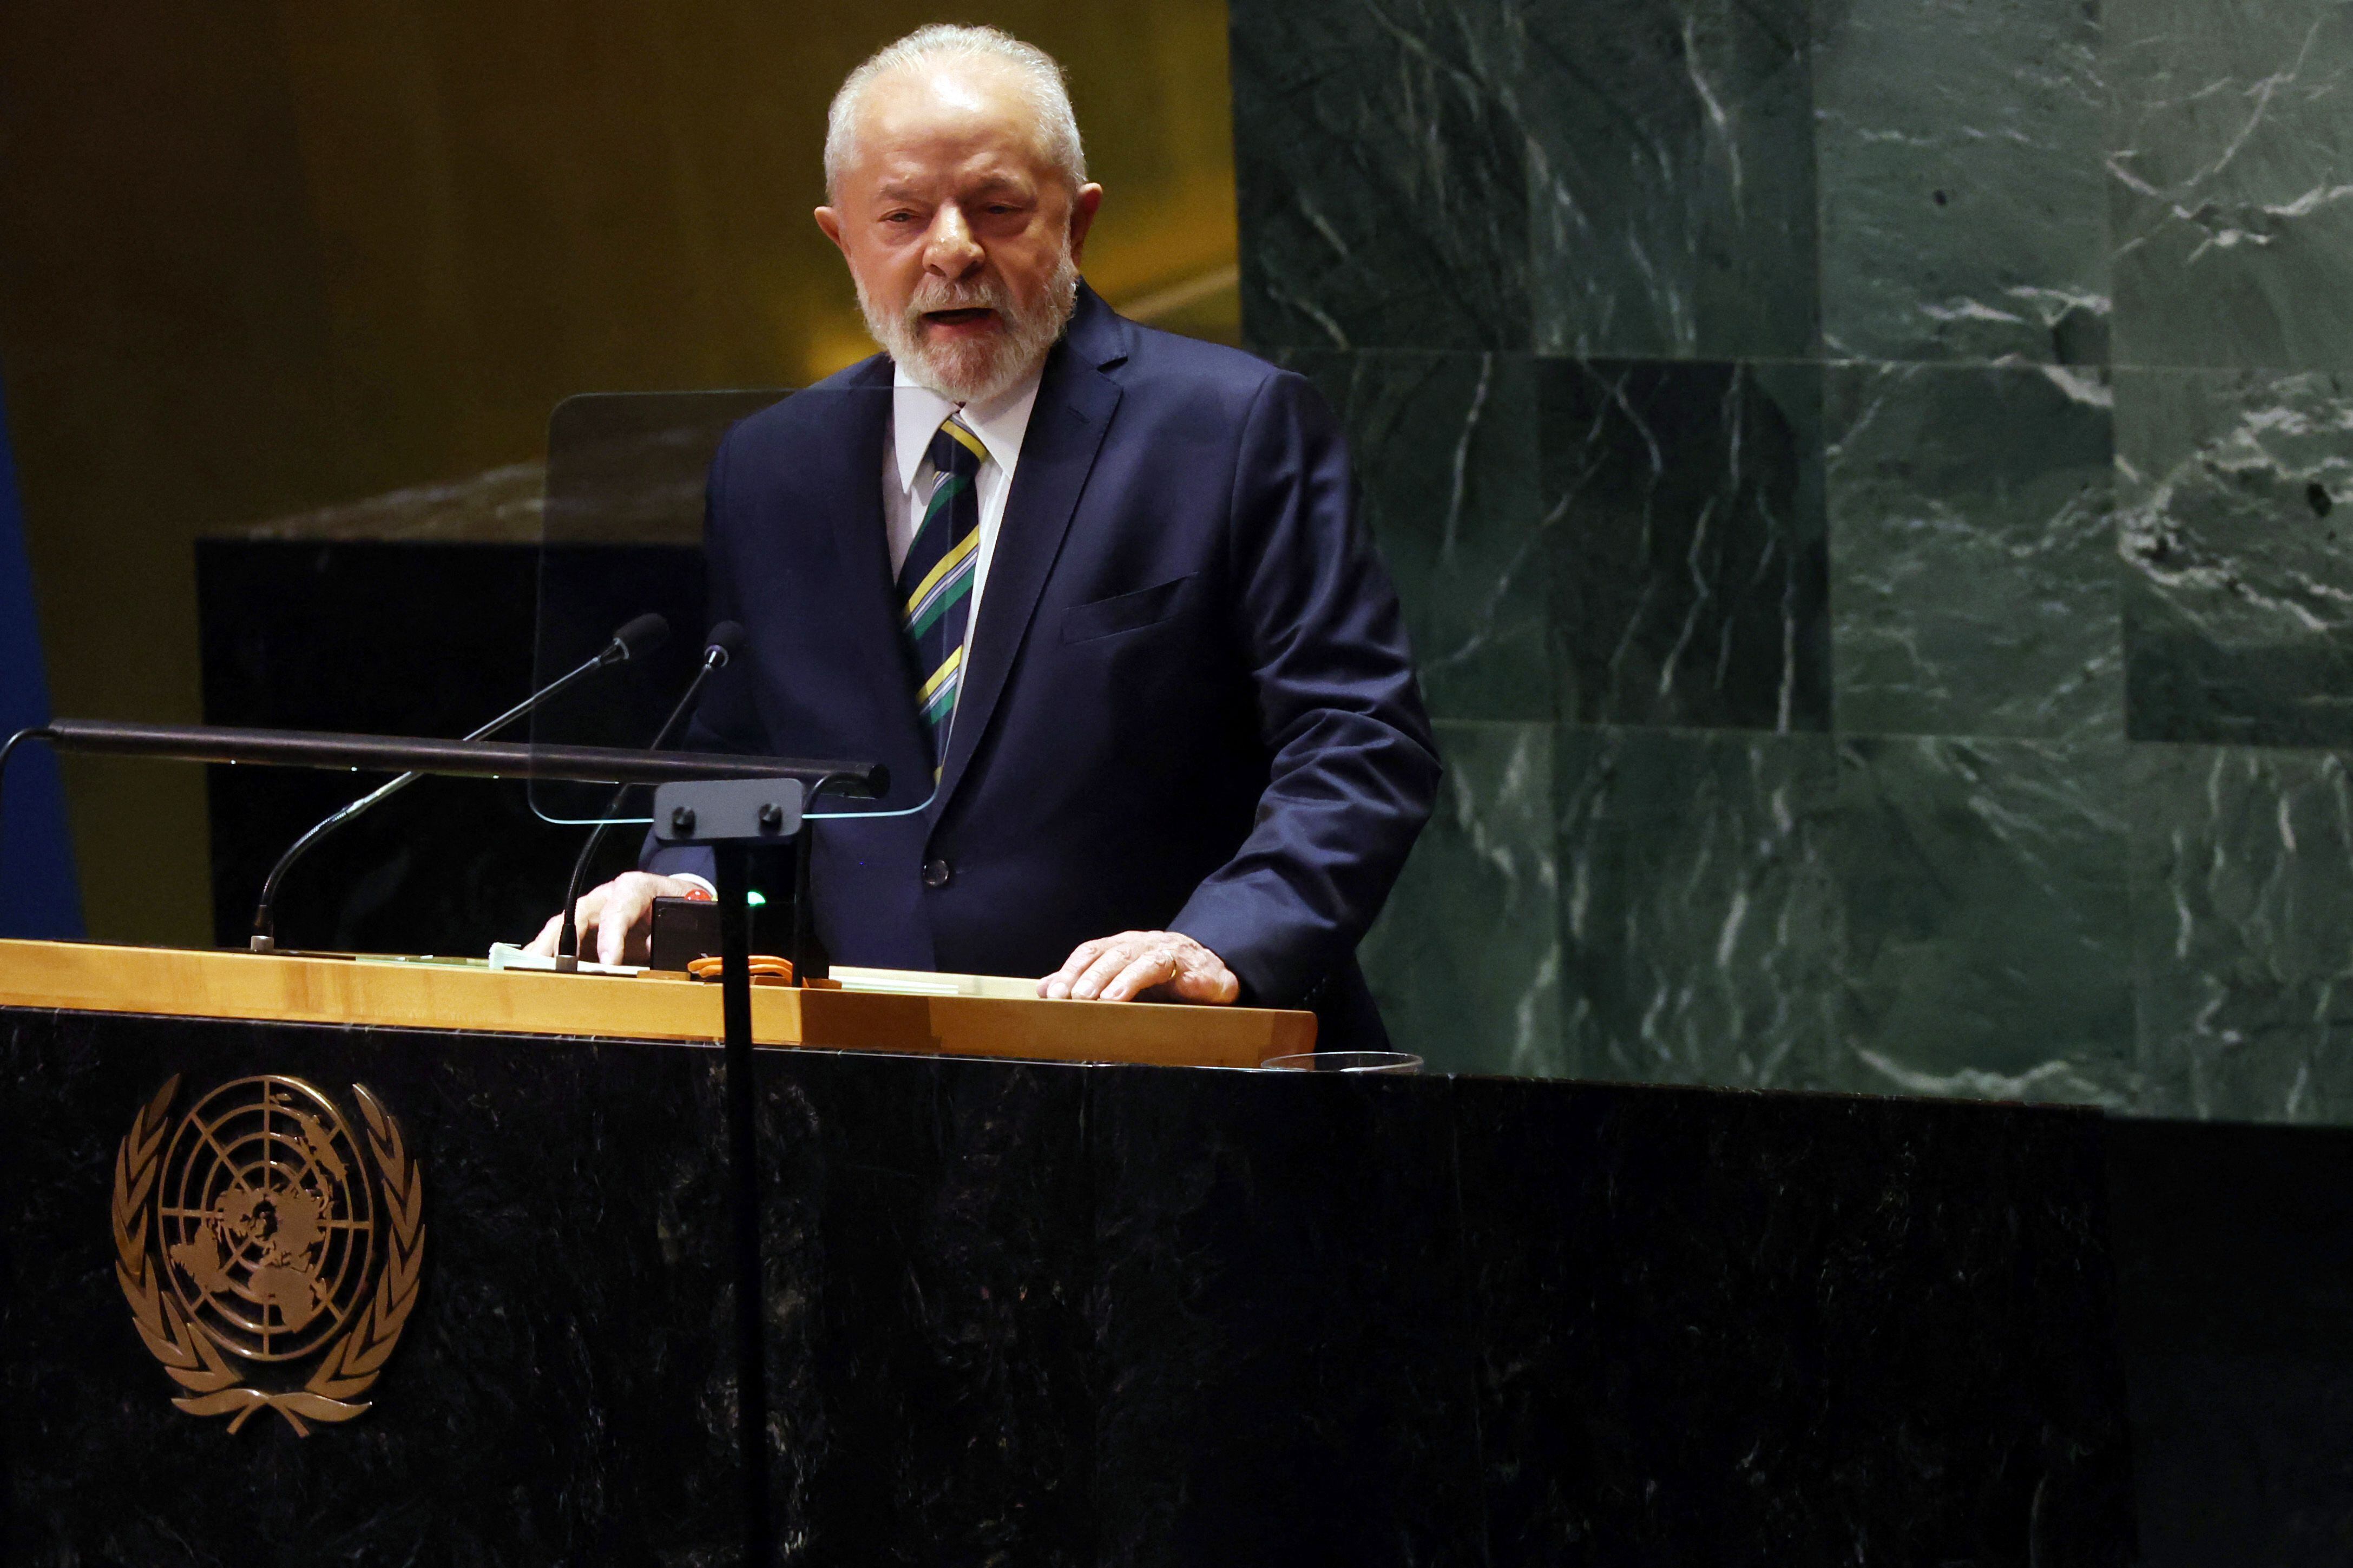 El presidente de Brasil, Luis Inácio Lula da Silva, se dirige a los líderes mundiales durante la Asamblea General de las Naciones Unidas (ONU).